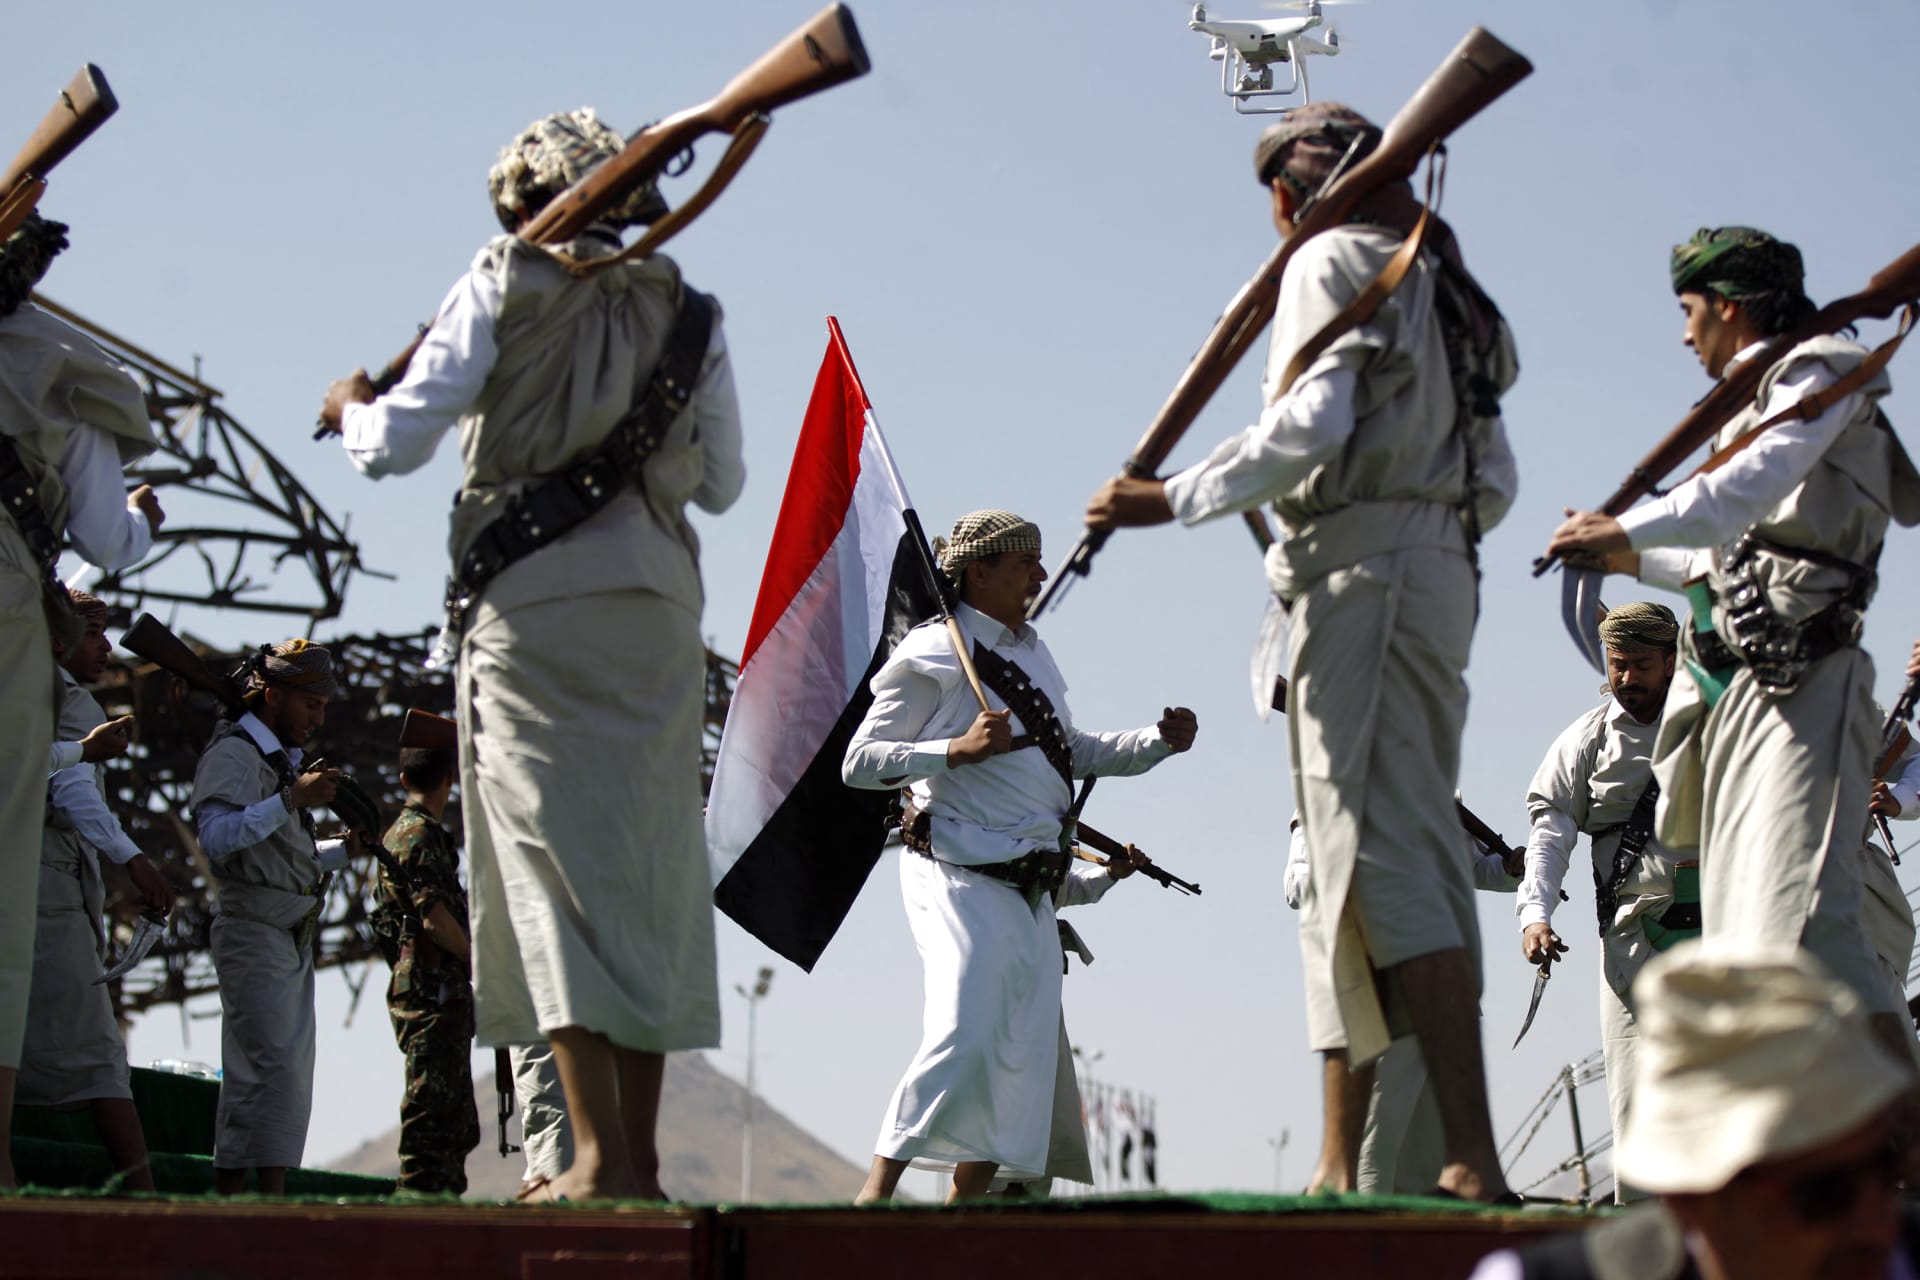 اتهامات ضد التحالف بقيادة السعودية في اليمن.. النص الكامل لرد الفريق المشترك لتقييم الحوادث